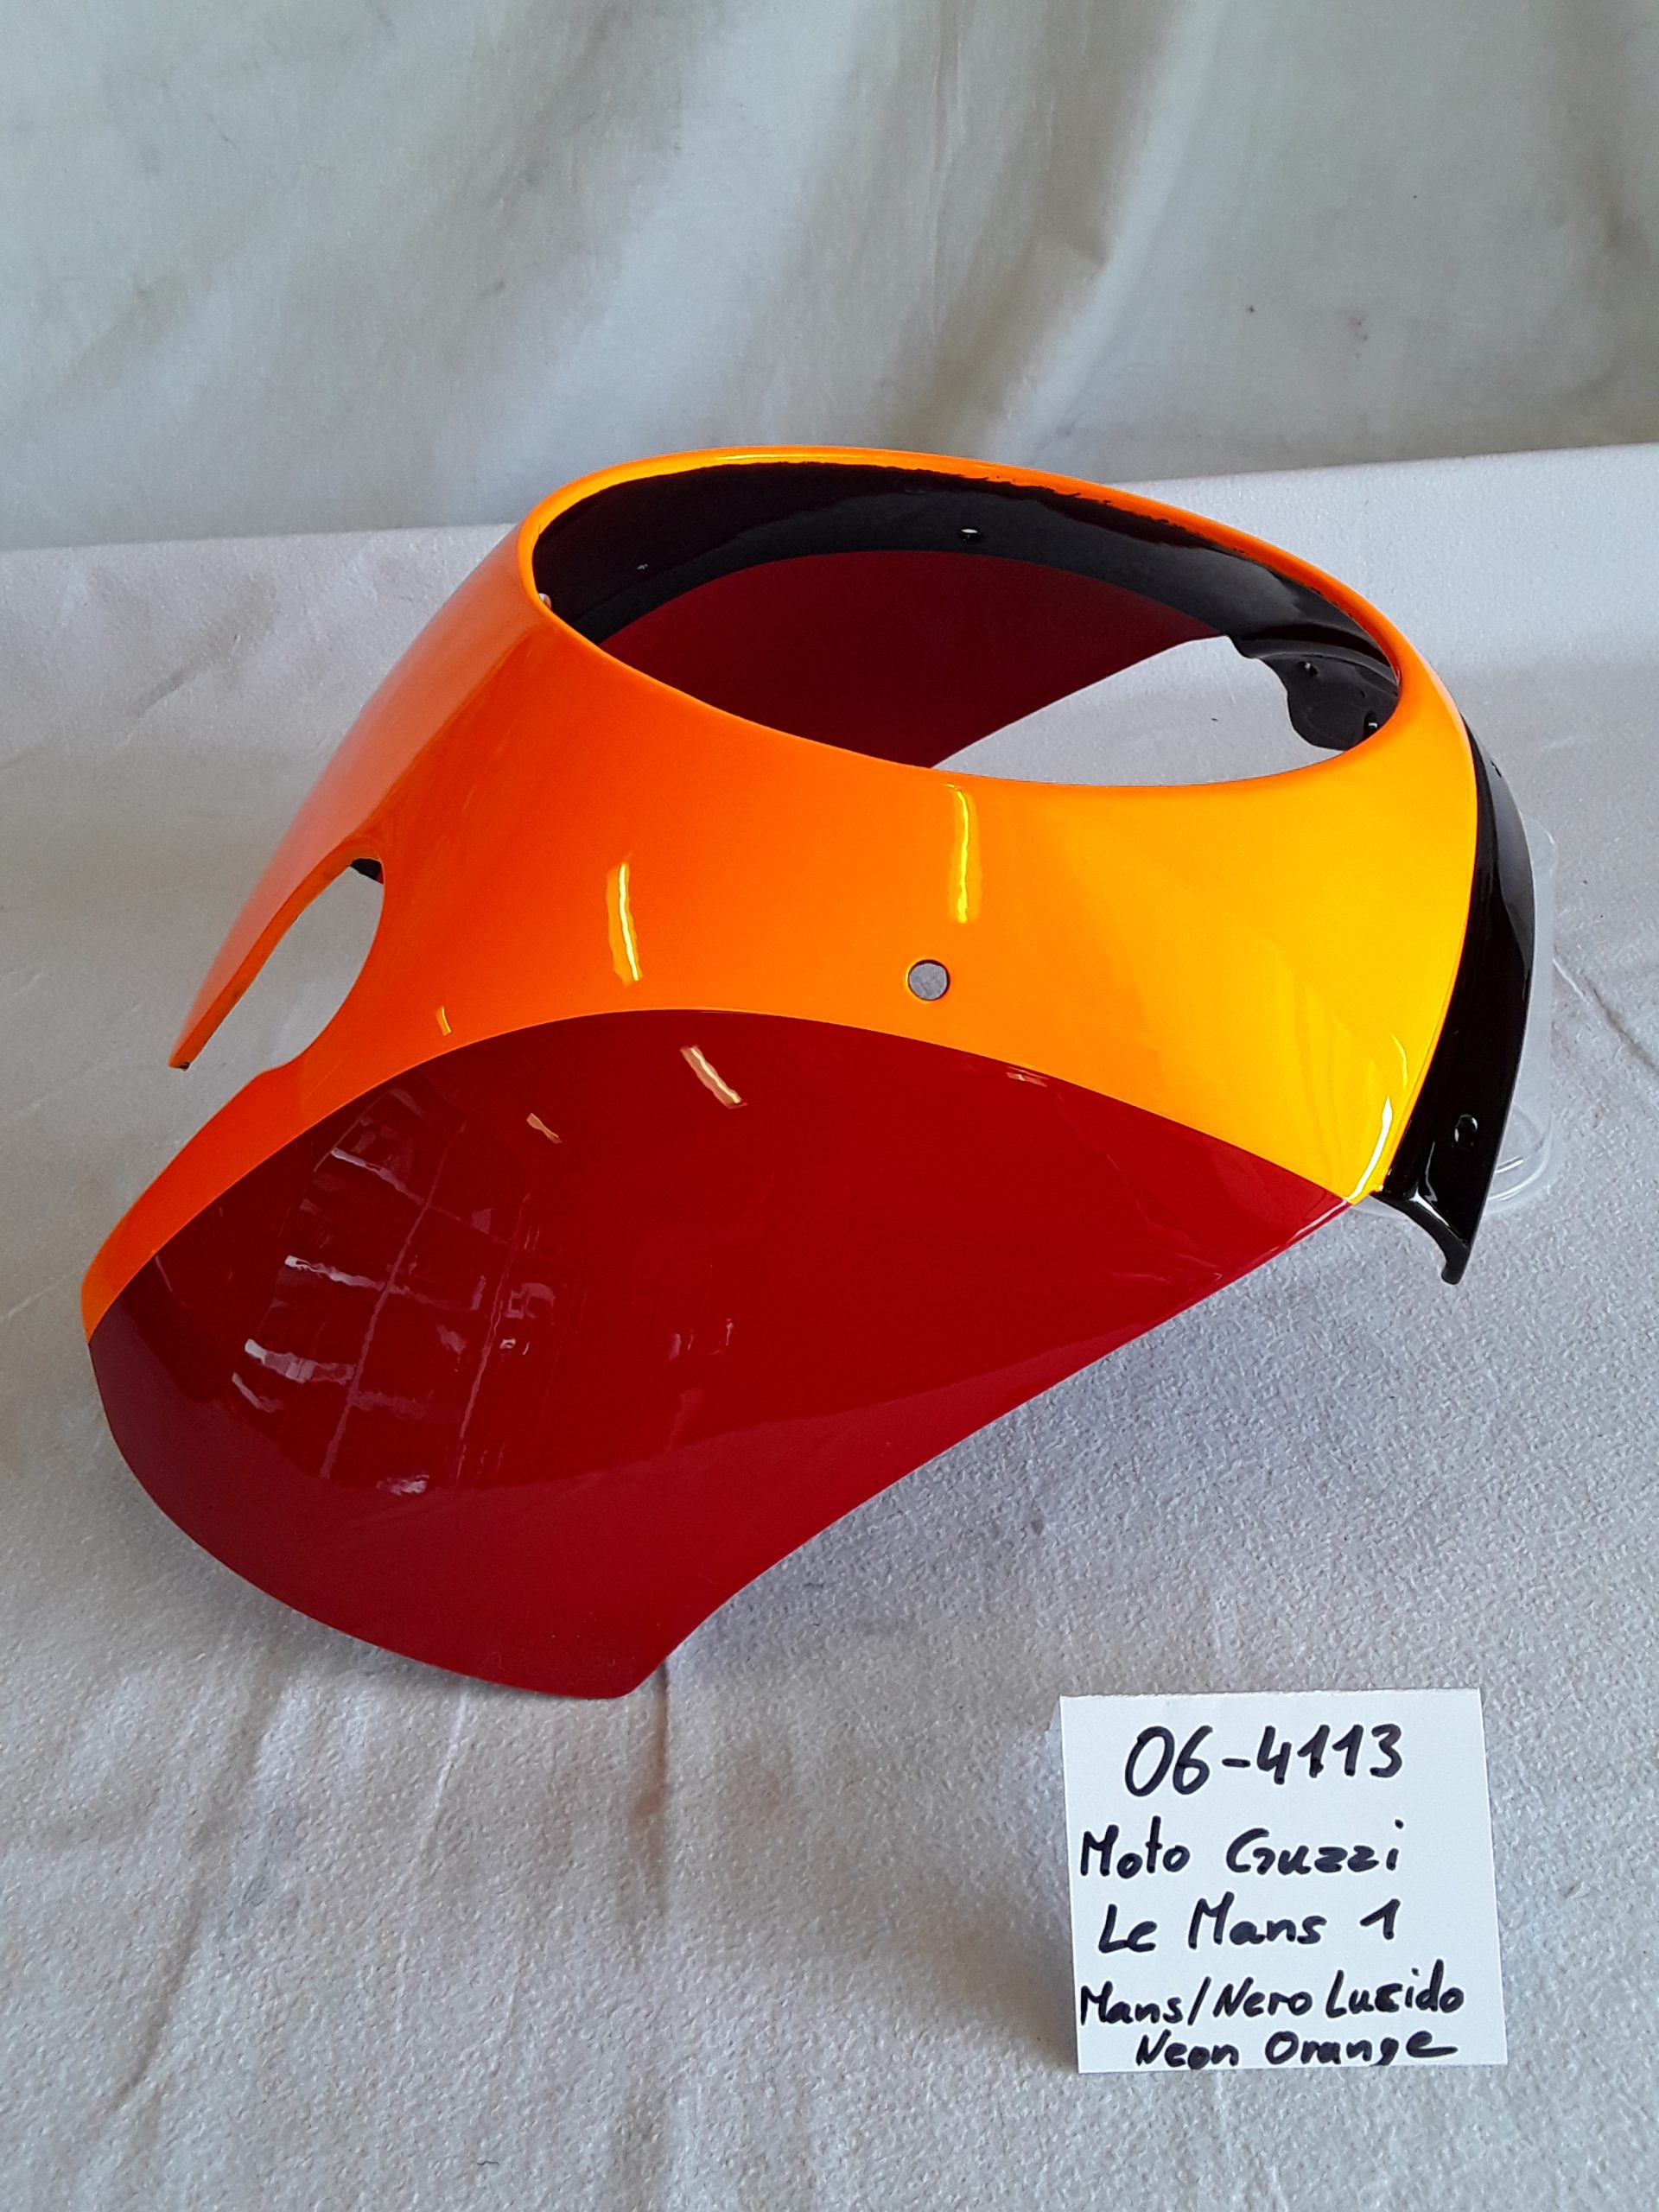 MOTO GUZZI Le Mans 1 schwarz rot Neon orange Front Verkleidung RH-Lacke Lackiererei Motorradlackierung